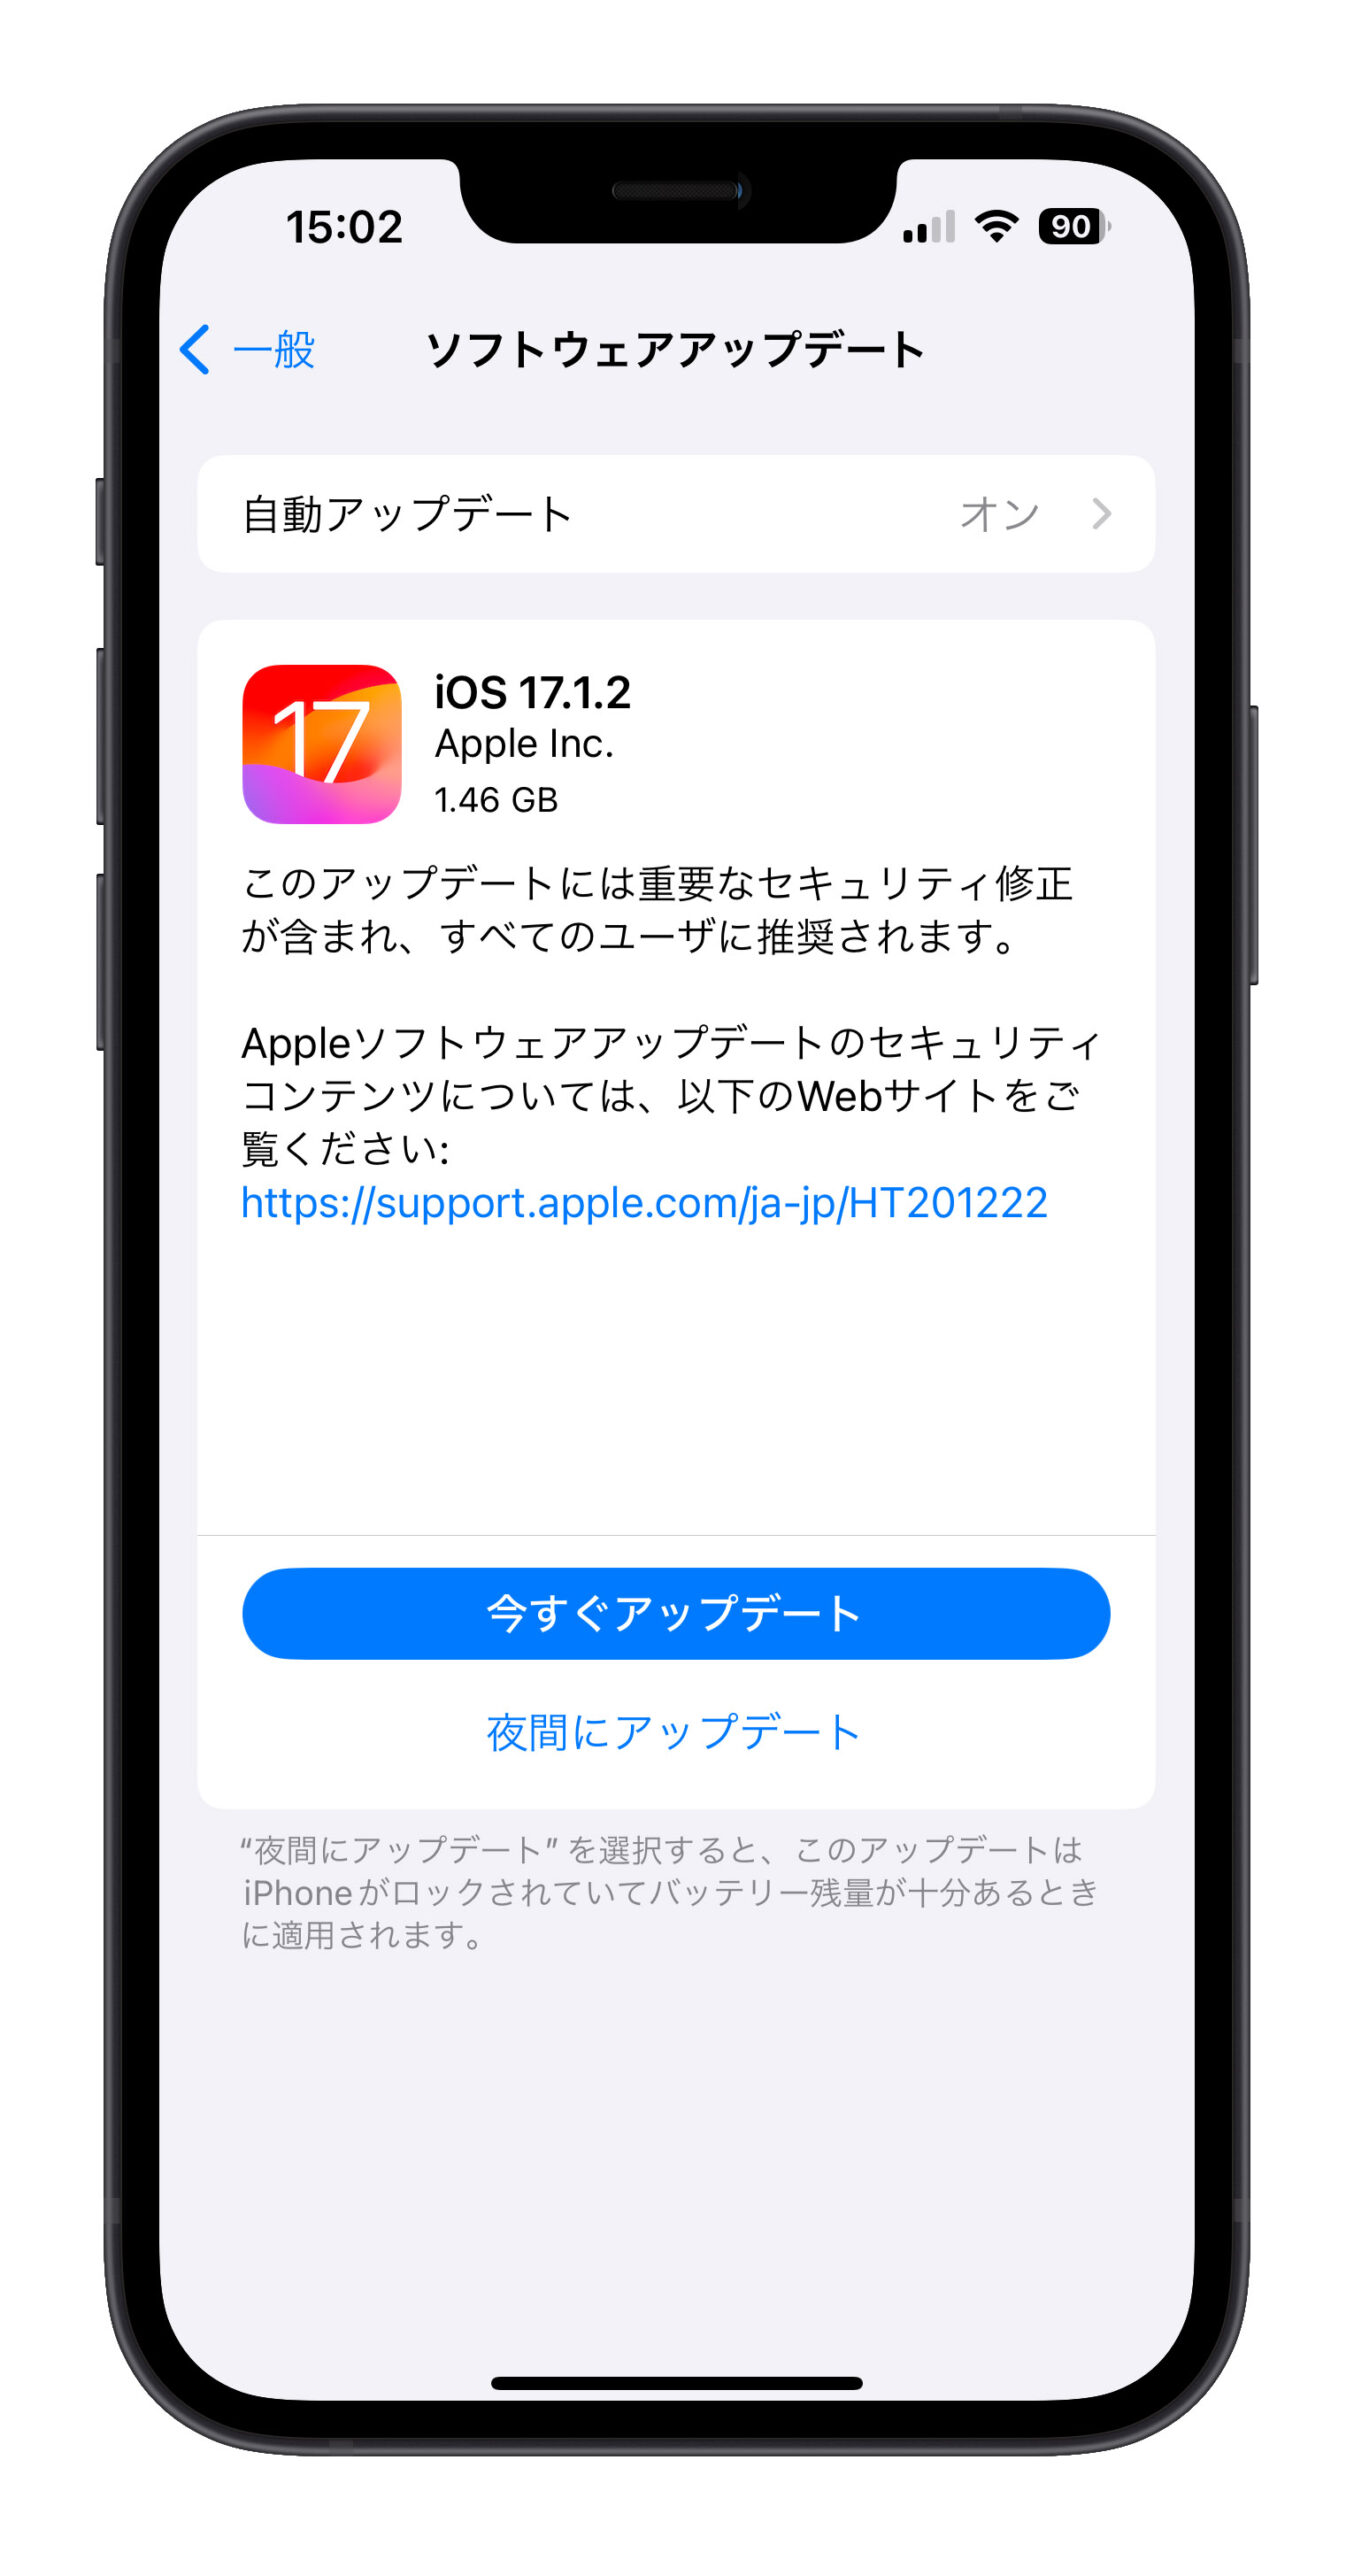 iOS 17.1.2 アップデート